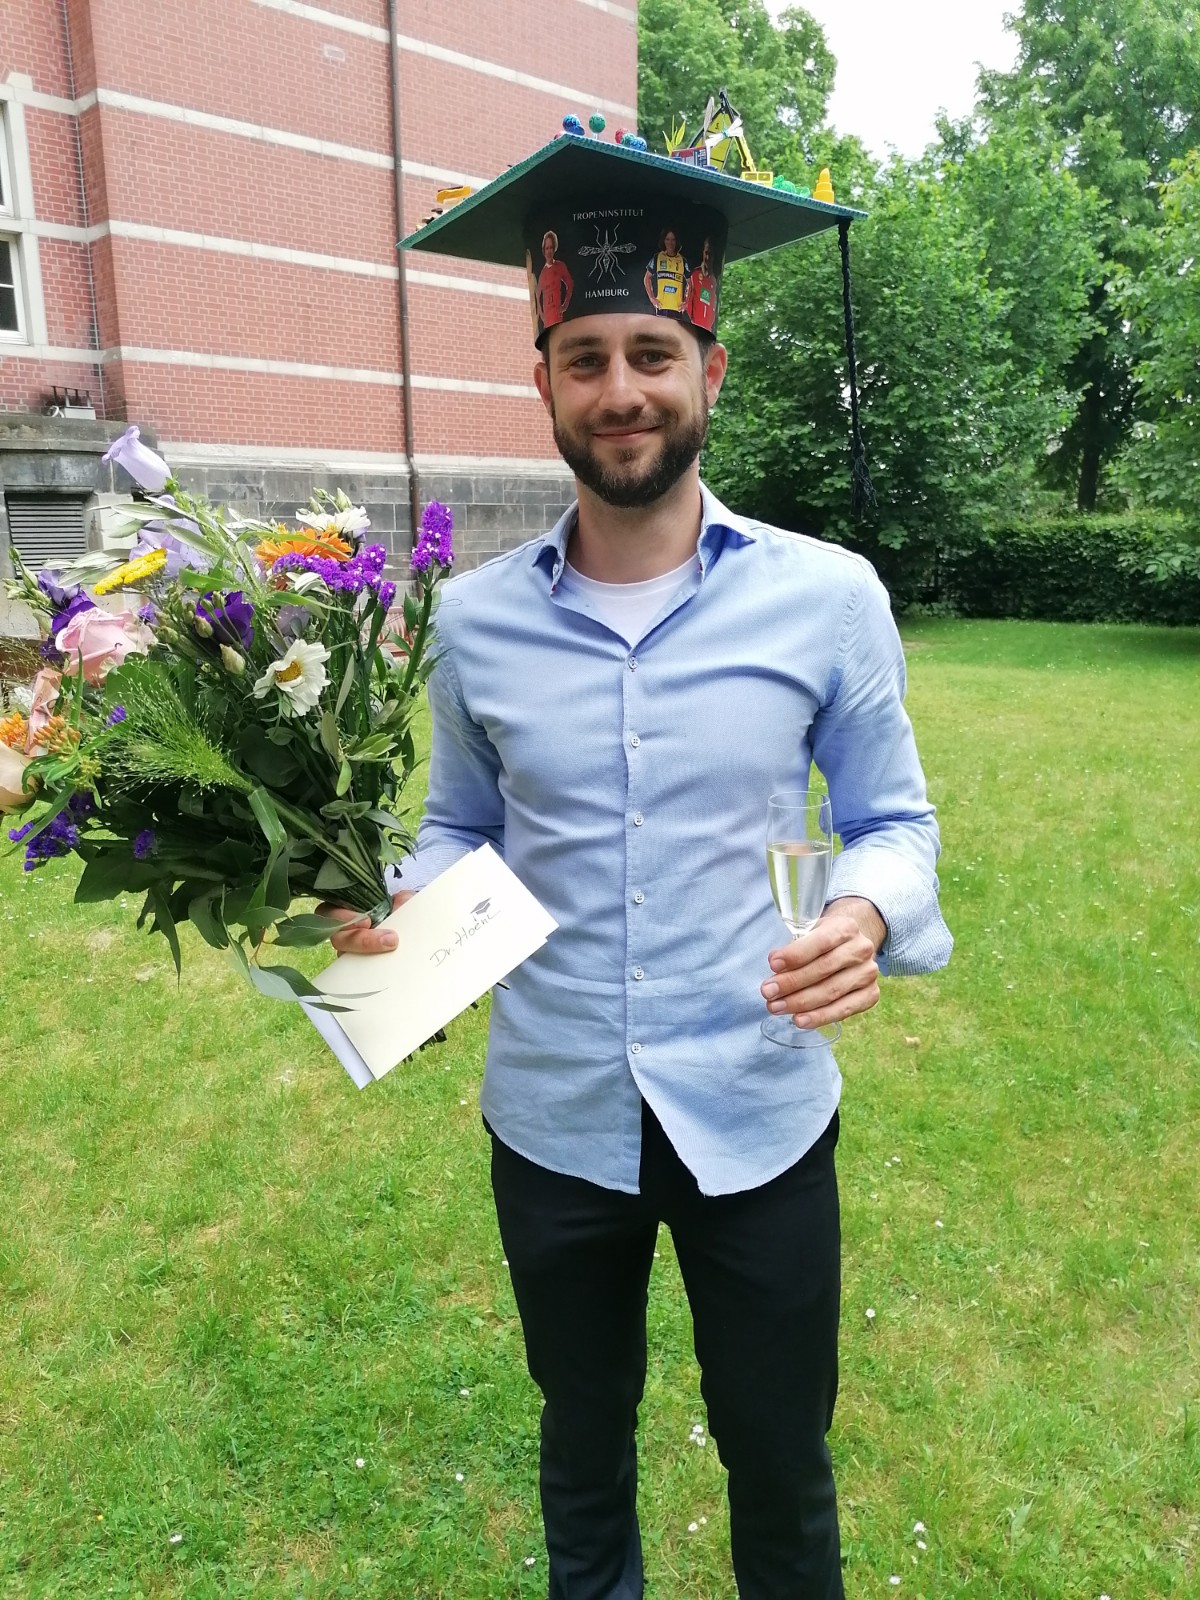 Stefan Hoenow kurz nach seiner Dissertation. Er trägt einen selbstgebastelten, bunten Doktorhut auf dem Kopf, in der rechten Hand einen großen Blumenstrauß und in der linken Hand ein Sektglas.